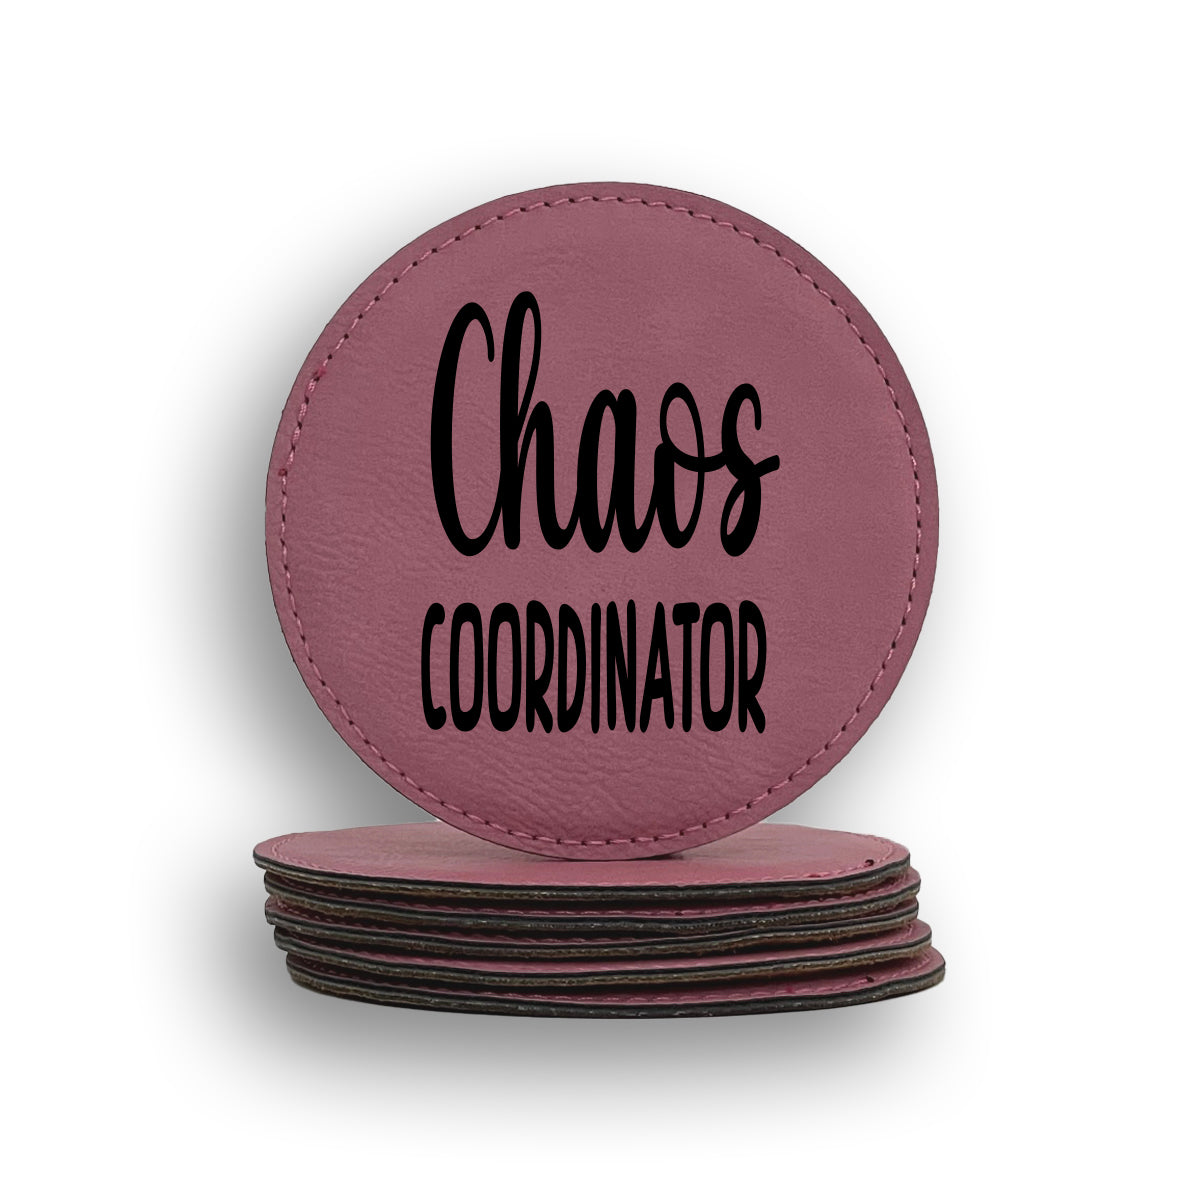 Chaos Coordinator Coaster